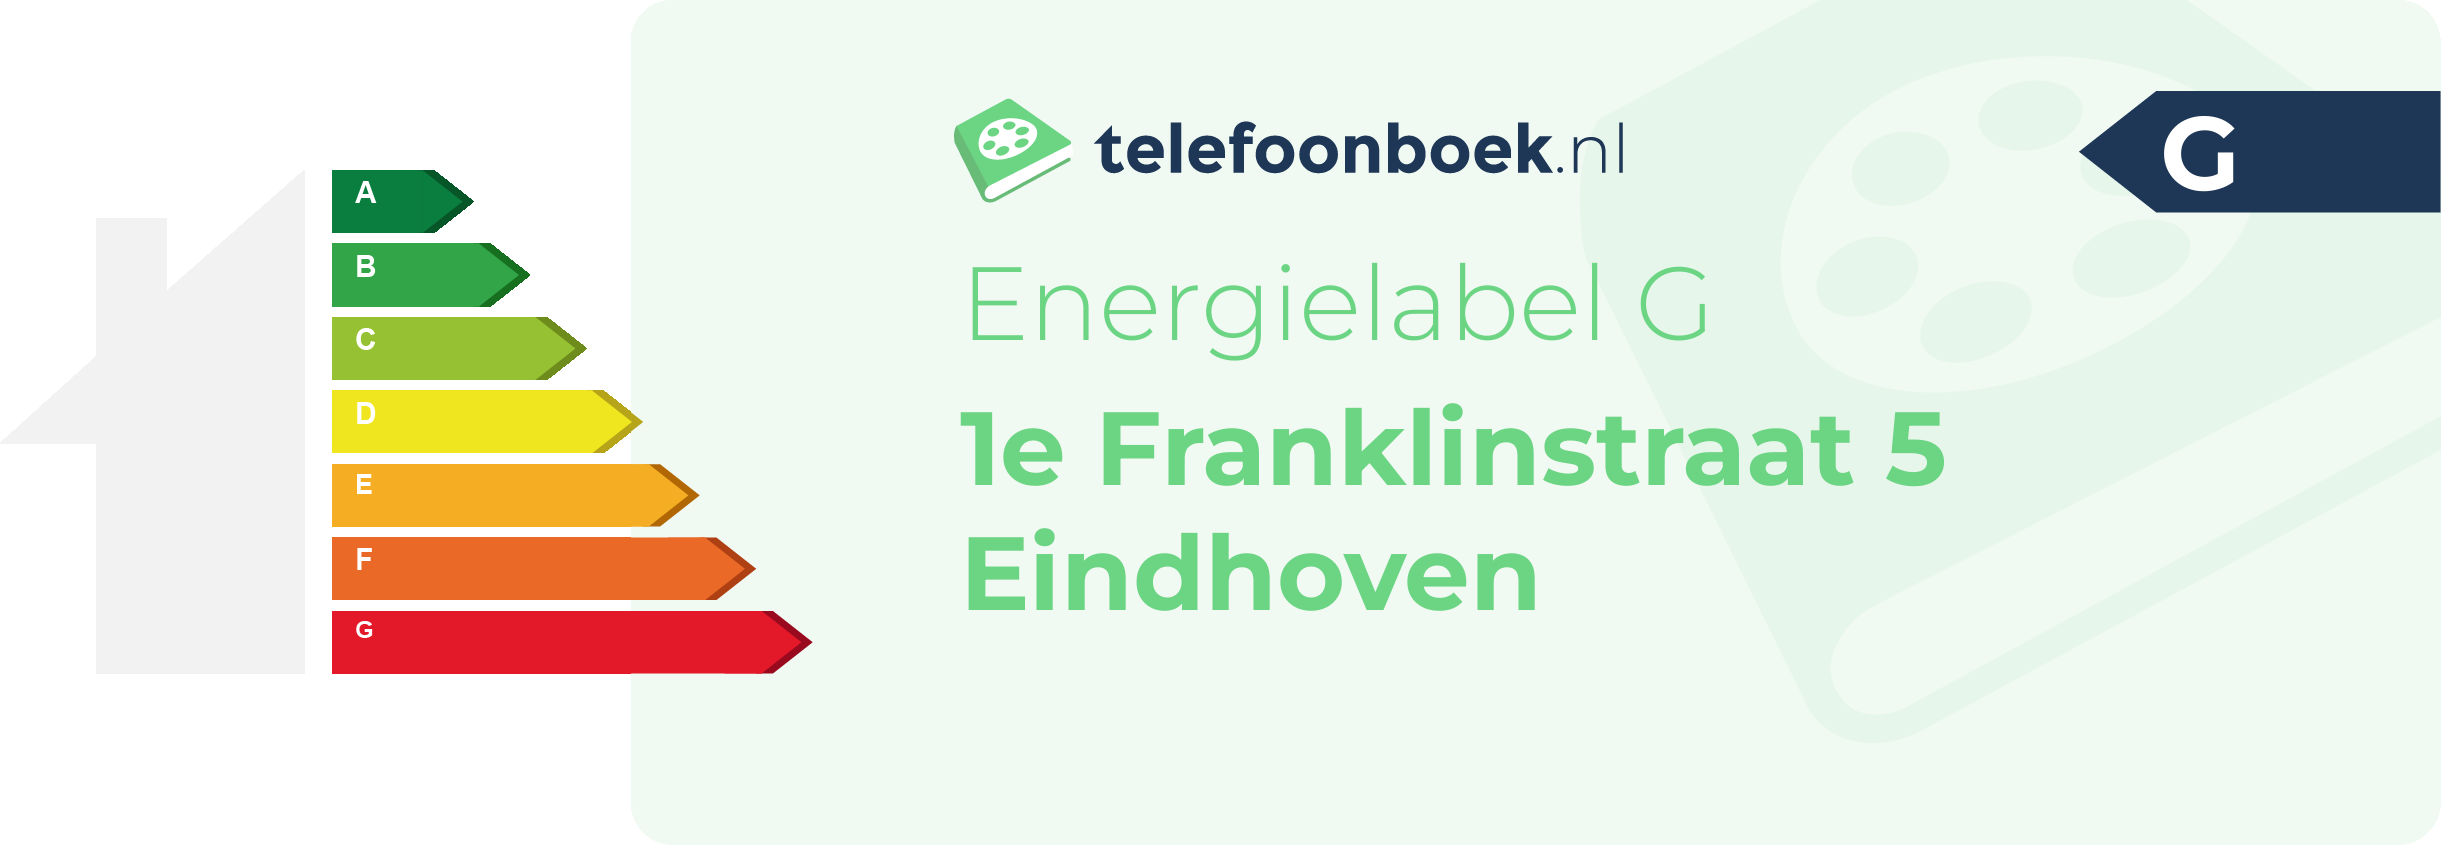 Energielabel 1e Franklinstraat 5 Eindhoven